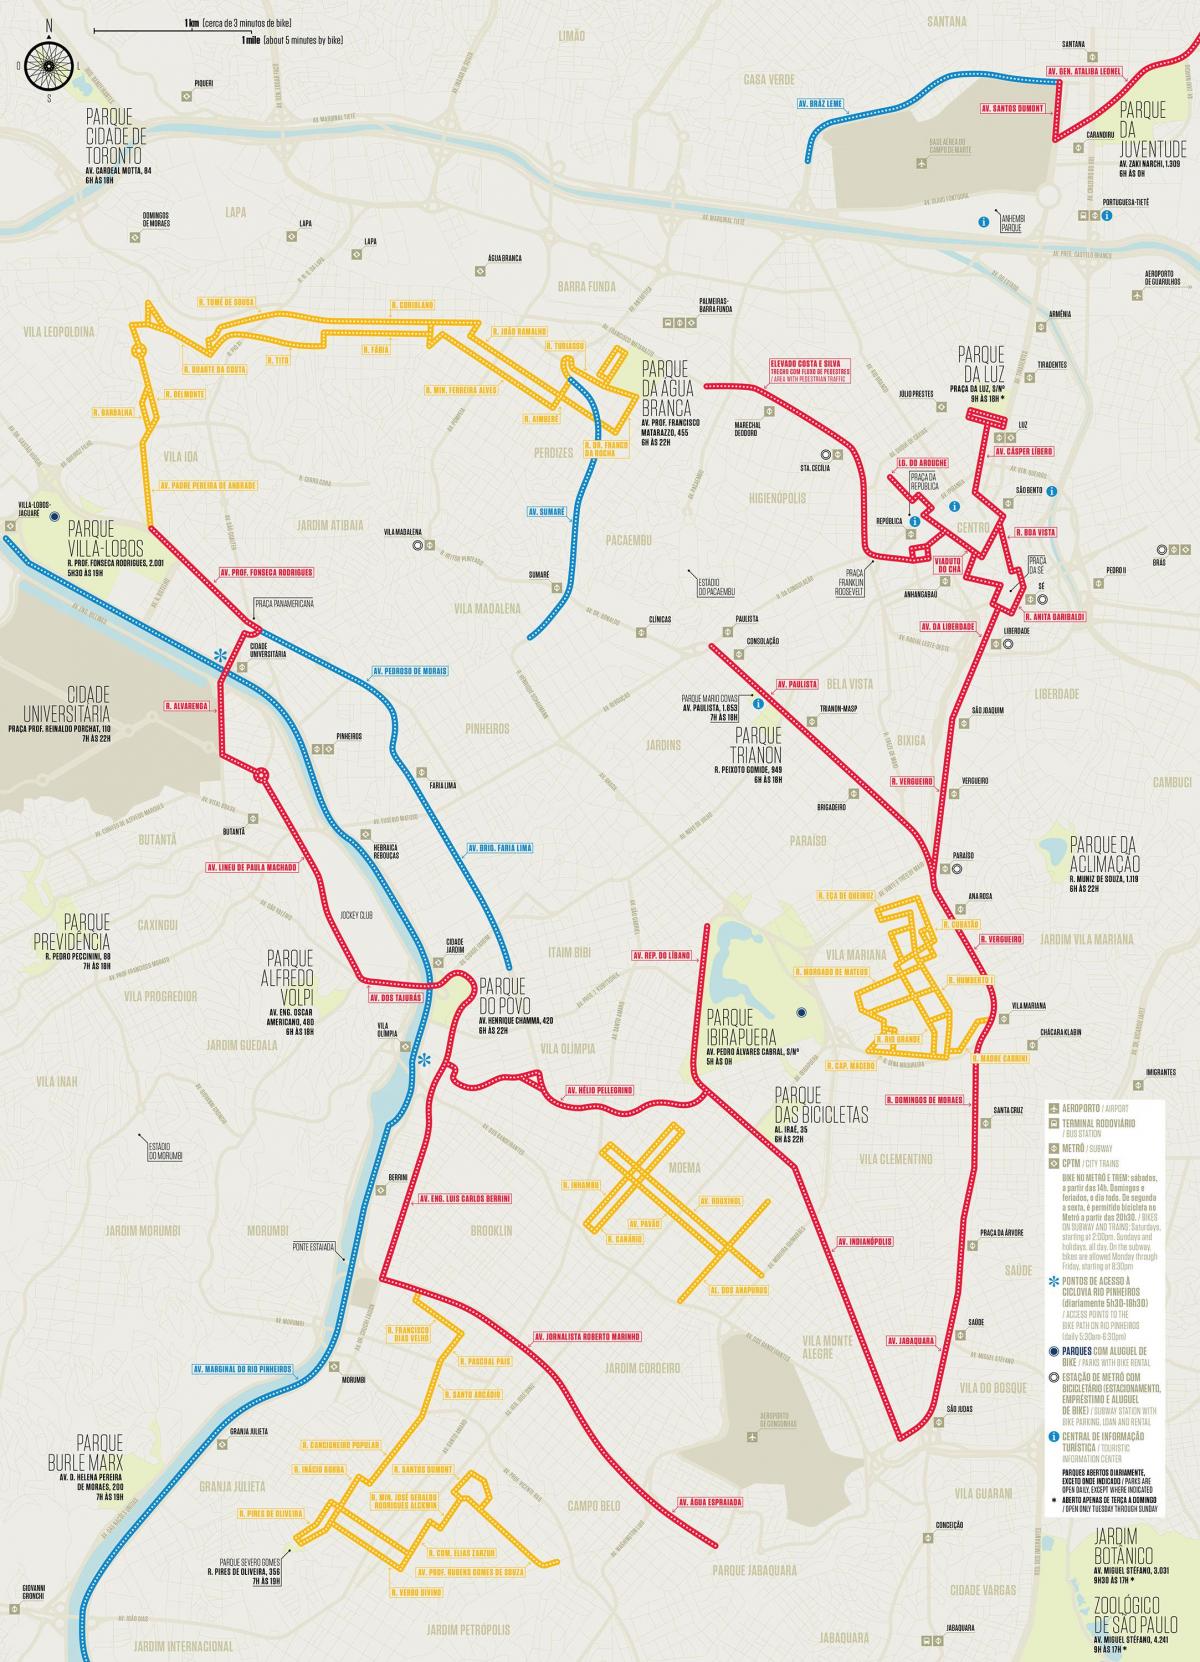 São Paulo bike lane map